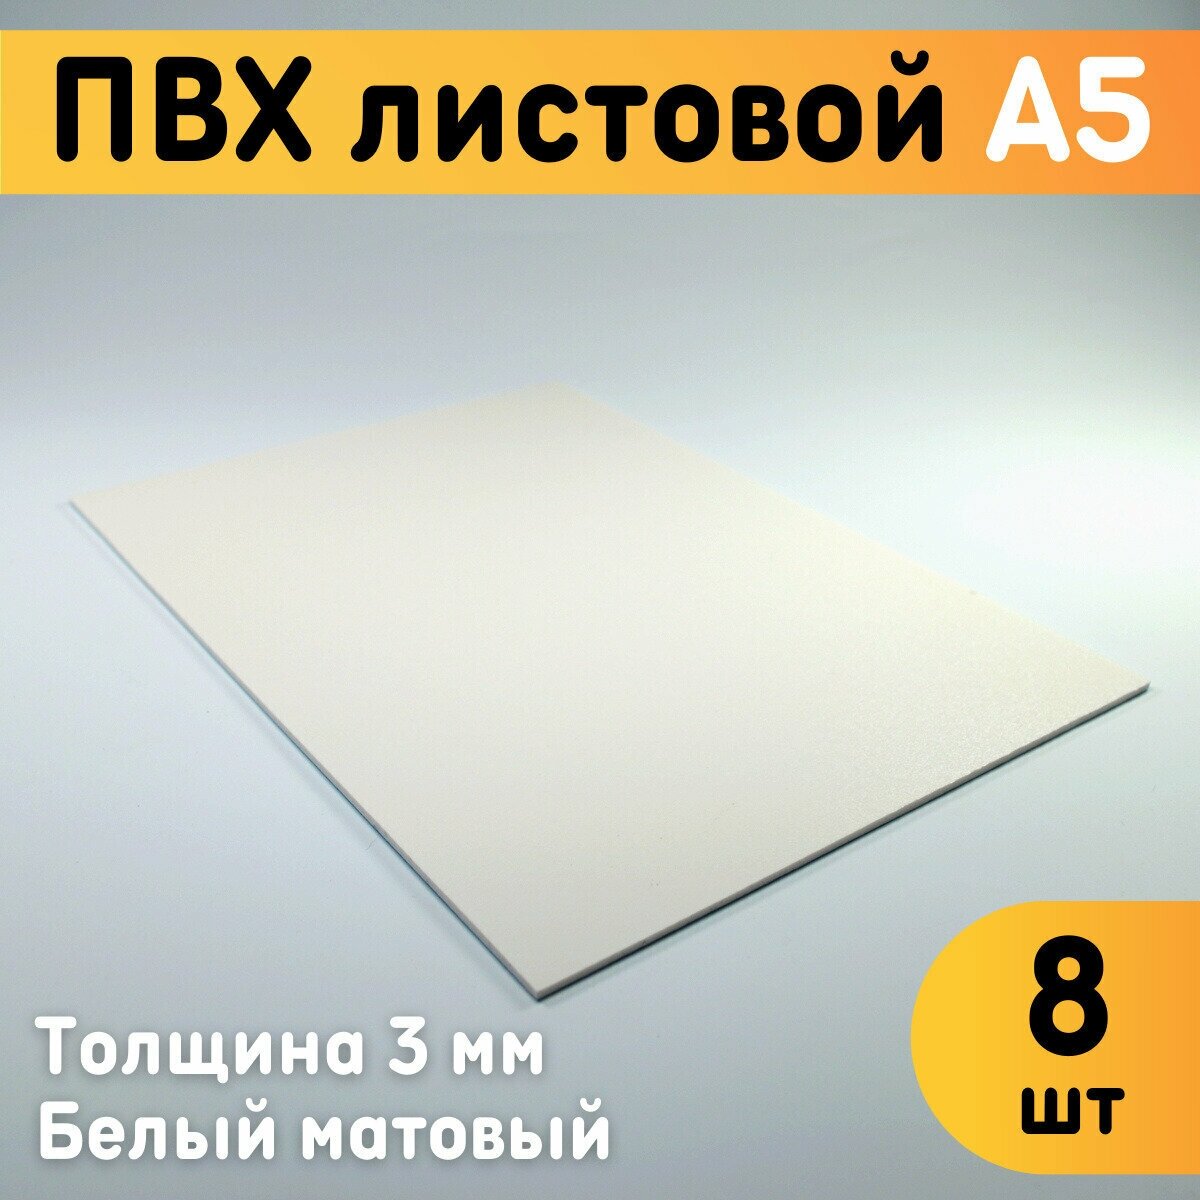 ПВХ листовой белый А5, 148х210 мм, толщина 3 мм, комплект 8 шт. / Белый пластик / Модельный пластик ПВХ